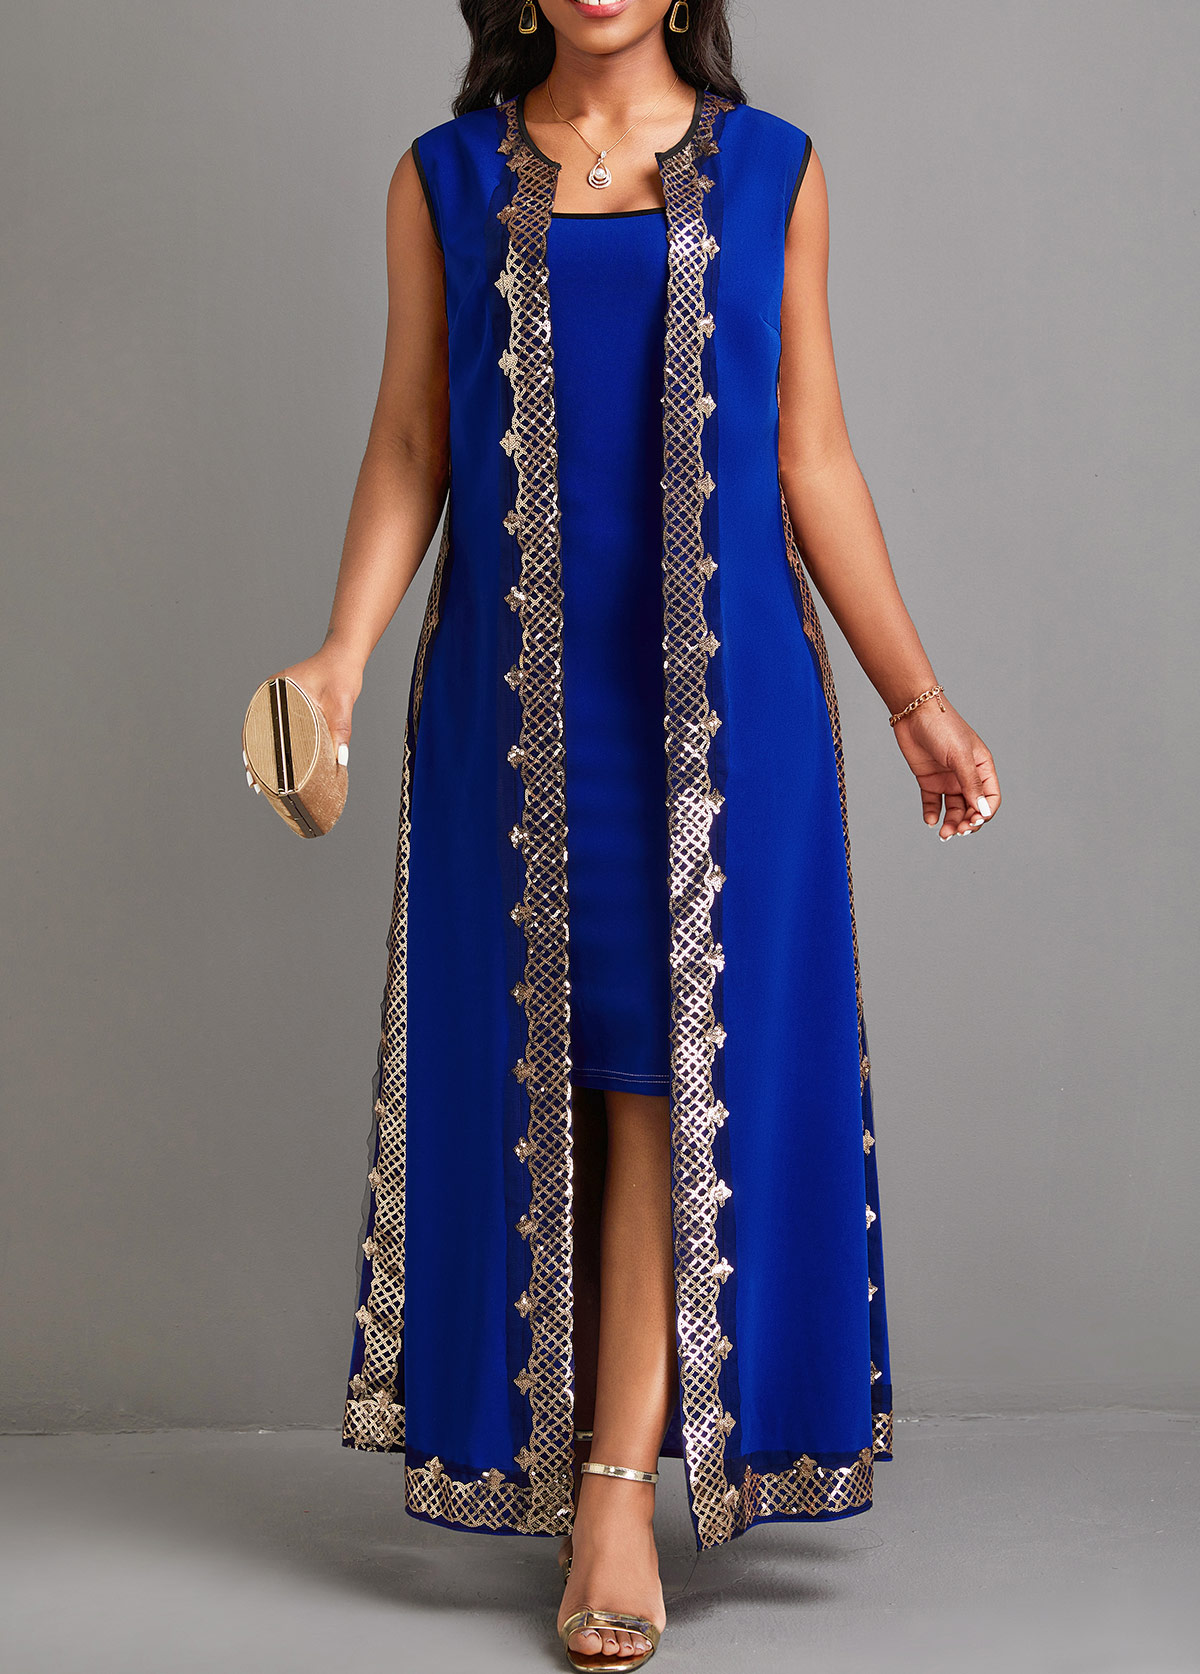 Sequin Blue Two Piece Suit Maxi Dress